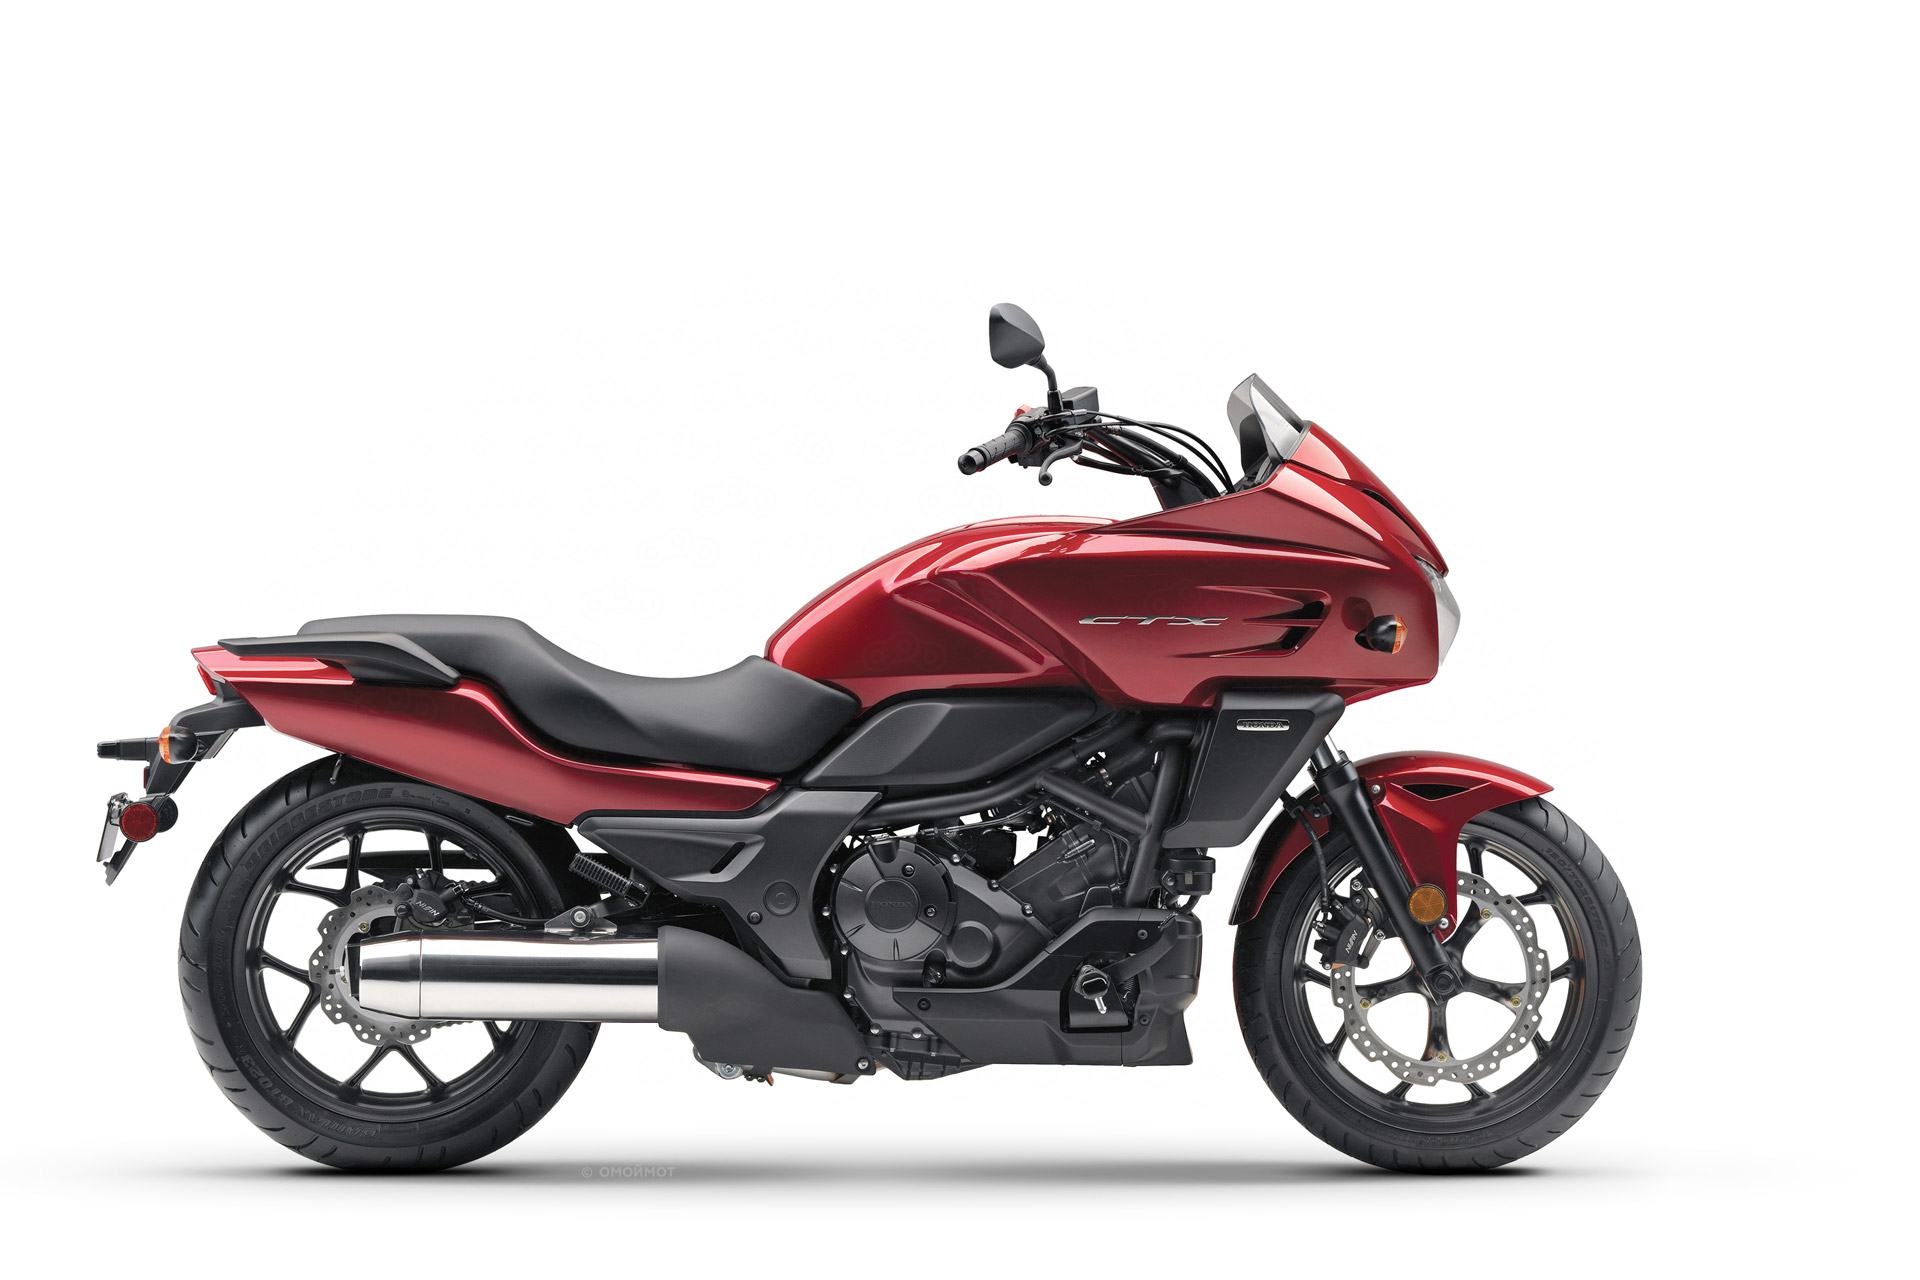 Мотоцикл Honda CTX700 цена, фото и характеристики нового мотоцикла